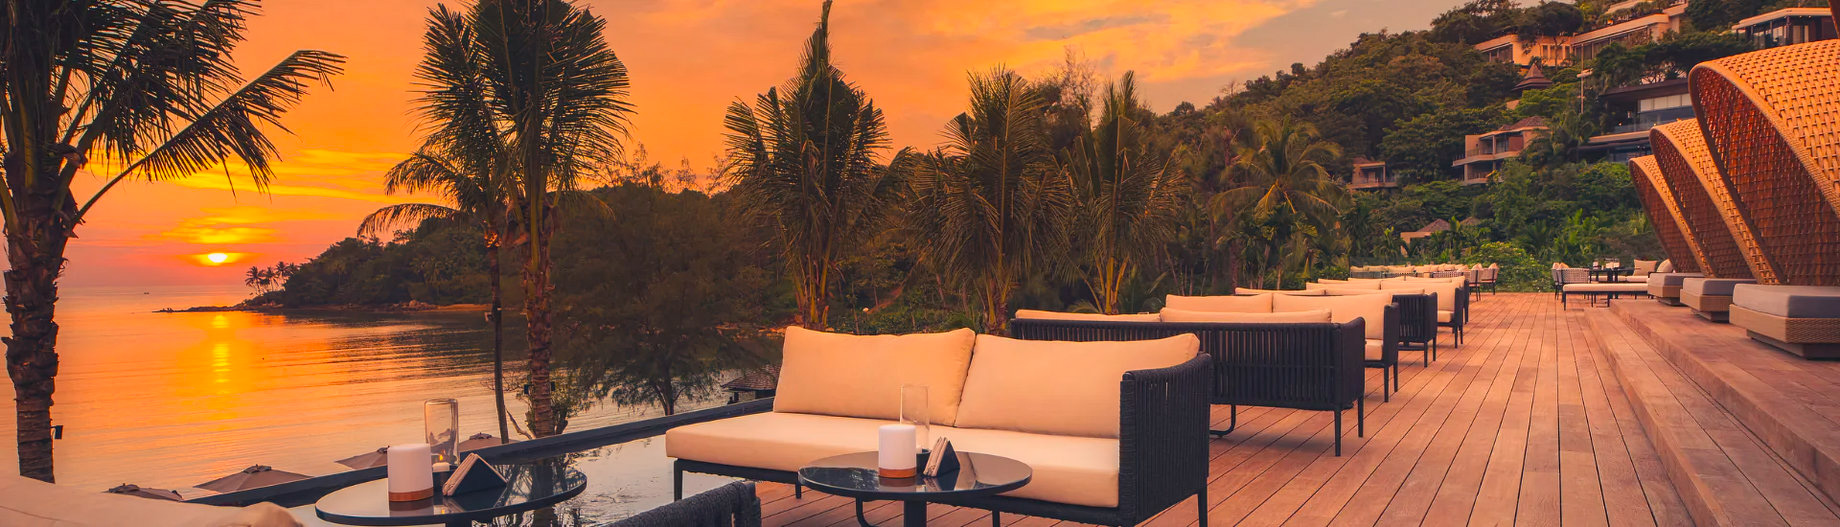 Anantara Layan Phuket Resort & Residences – Thailand – Rooftop Lounge